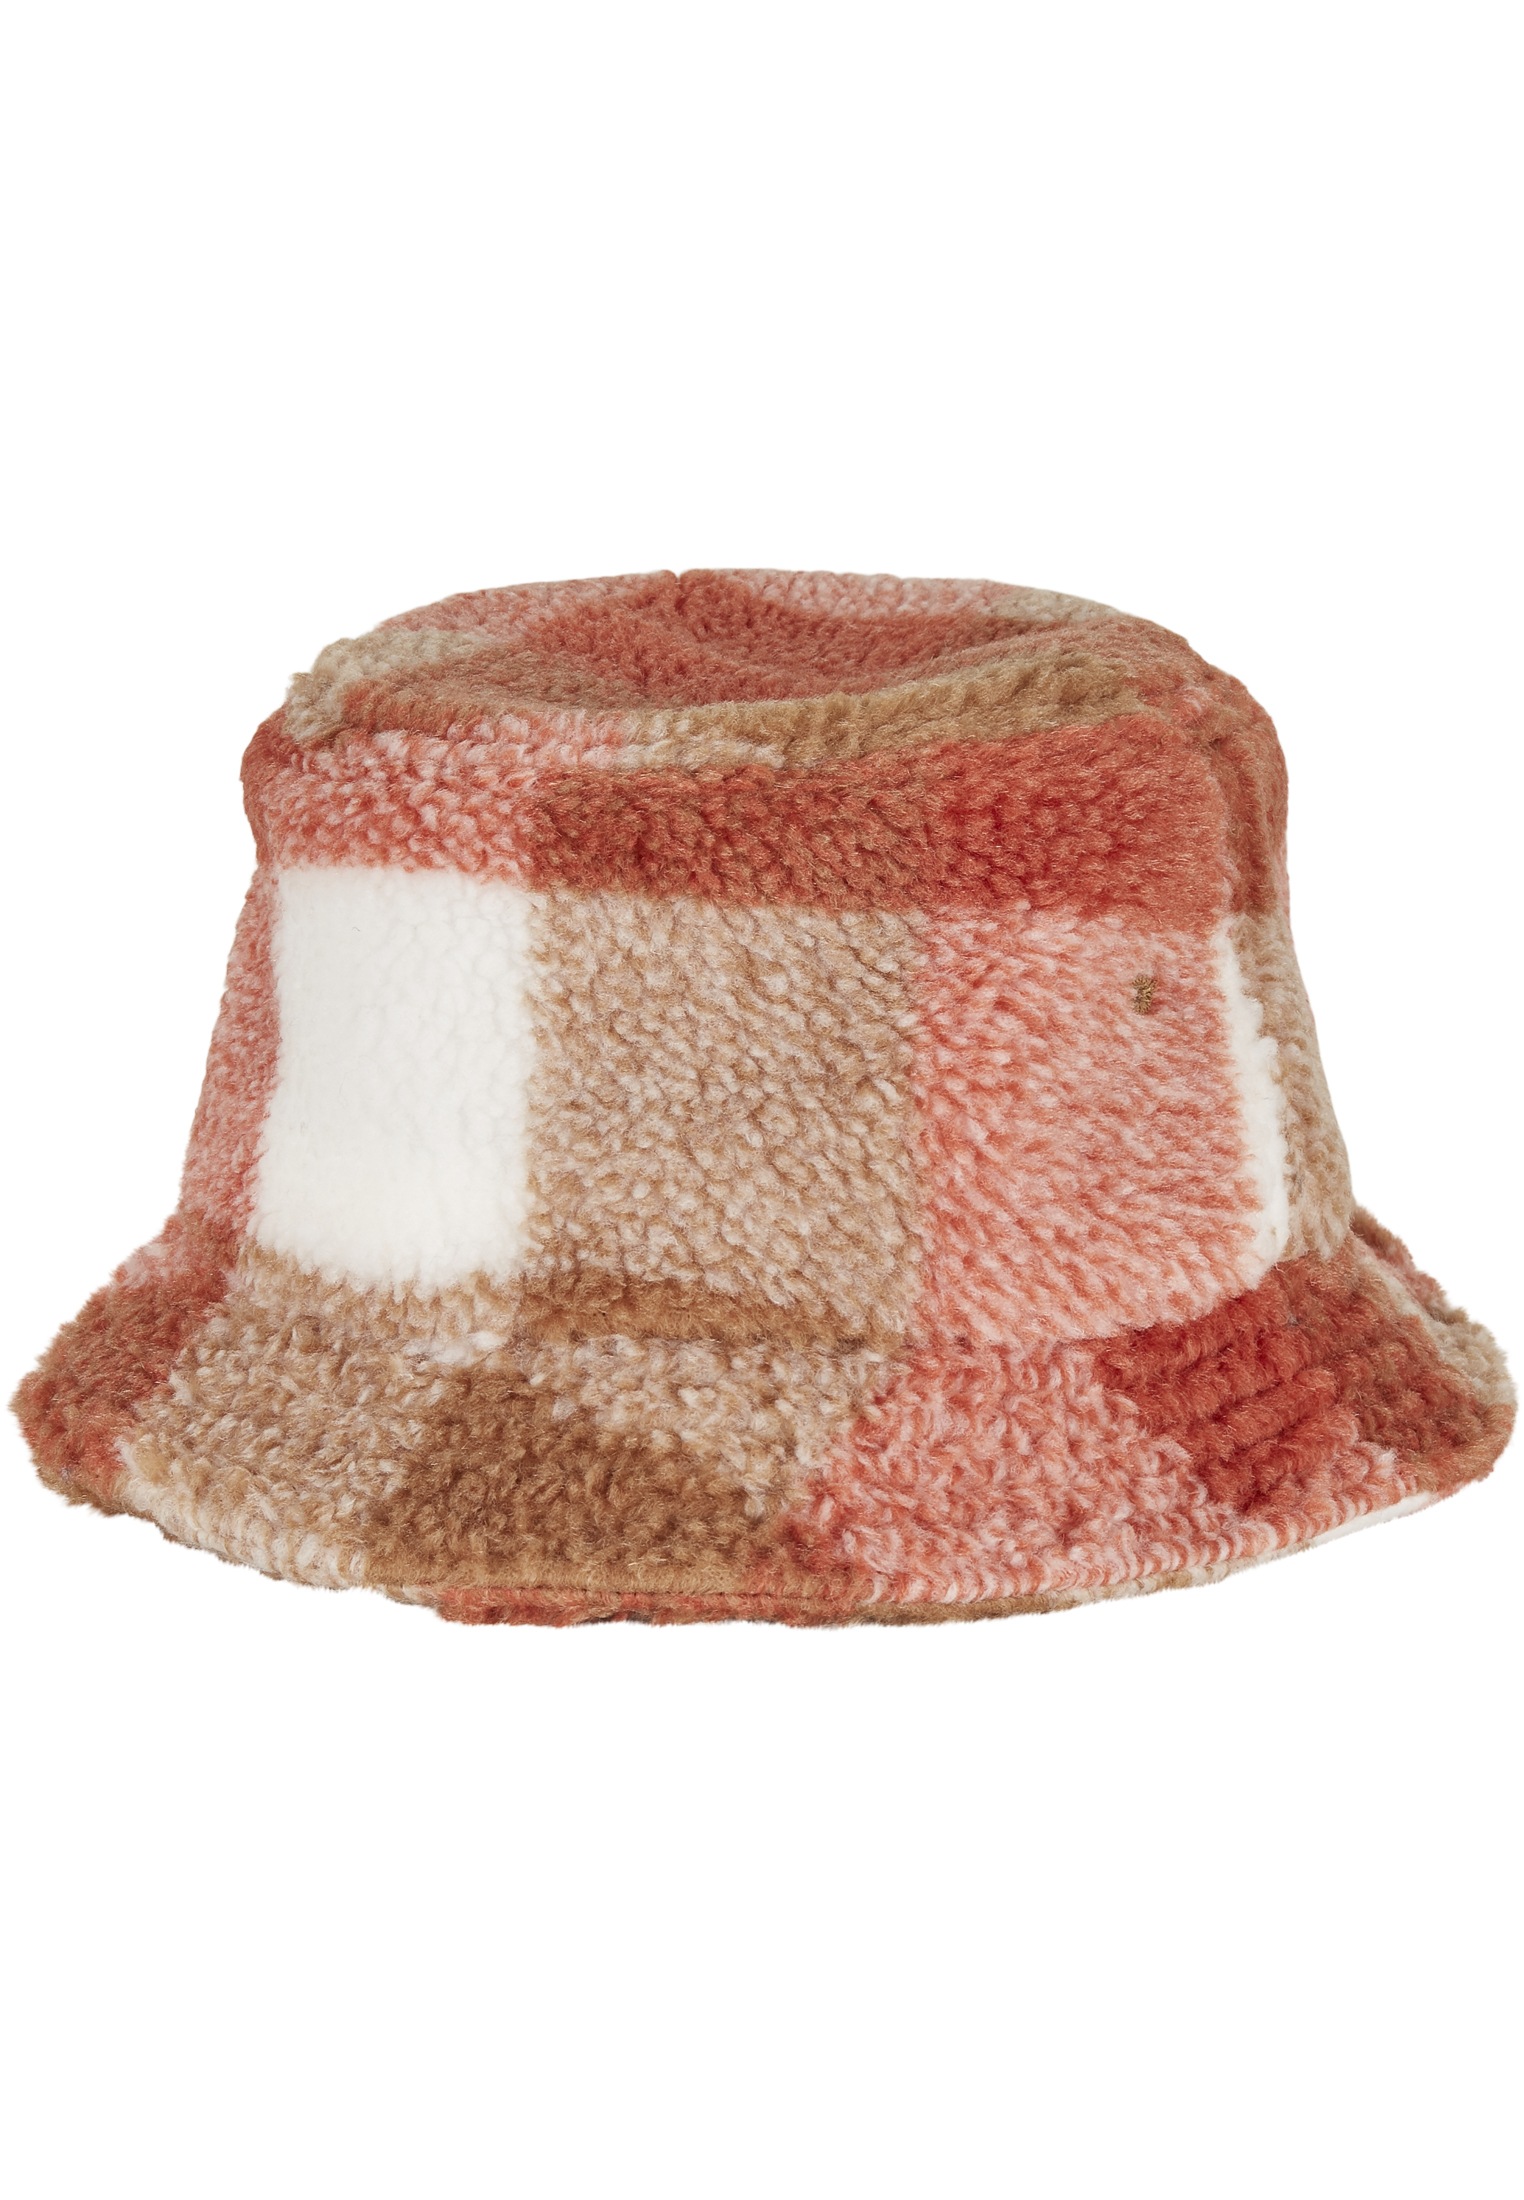 Bucket Flex Onlineshop »Bucket Cap walking Sherpa Check Flexfit Hat Hat« I\'m im |